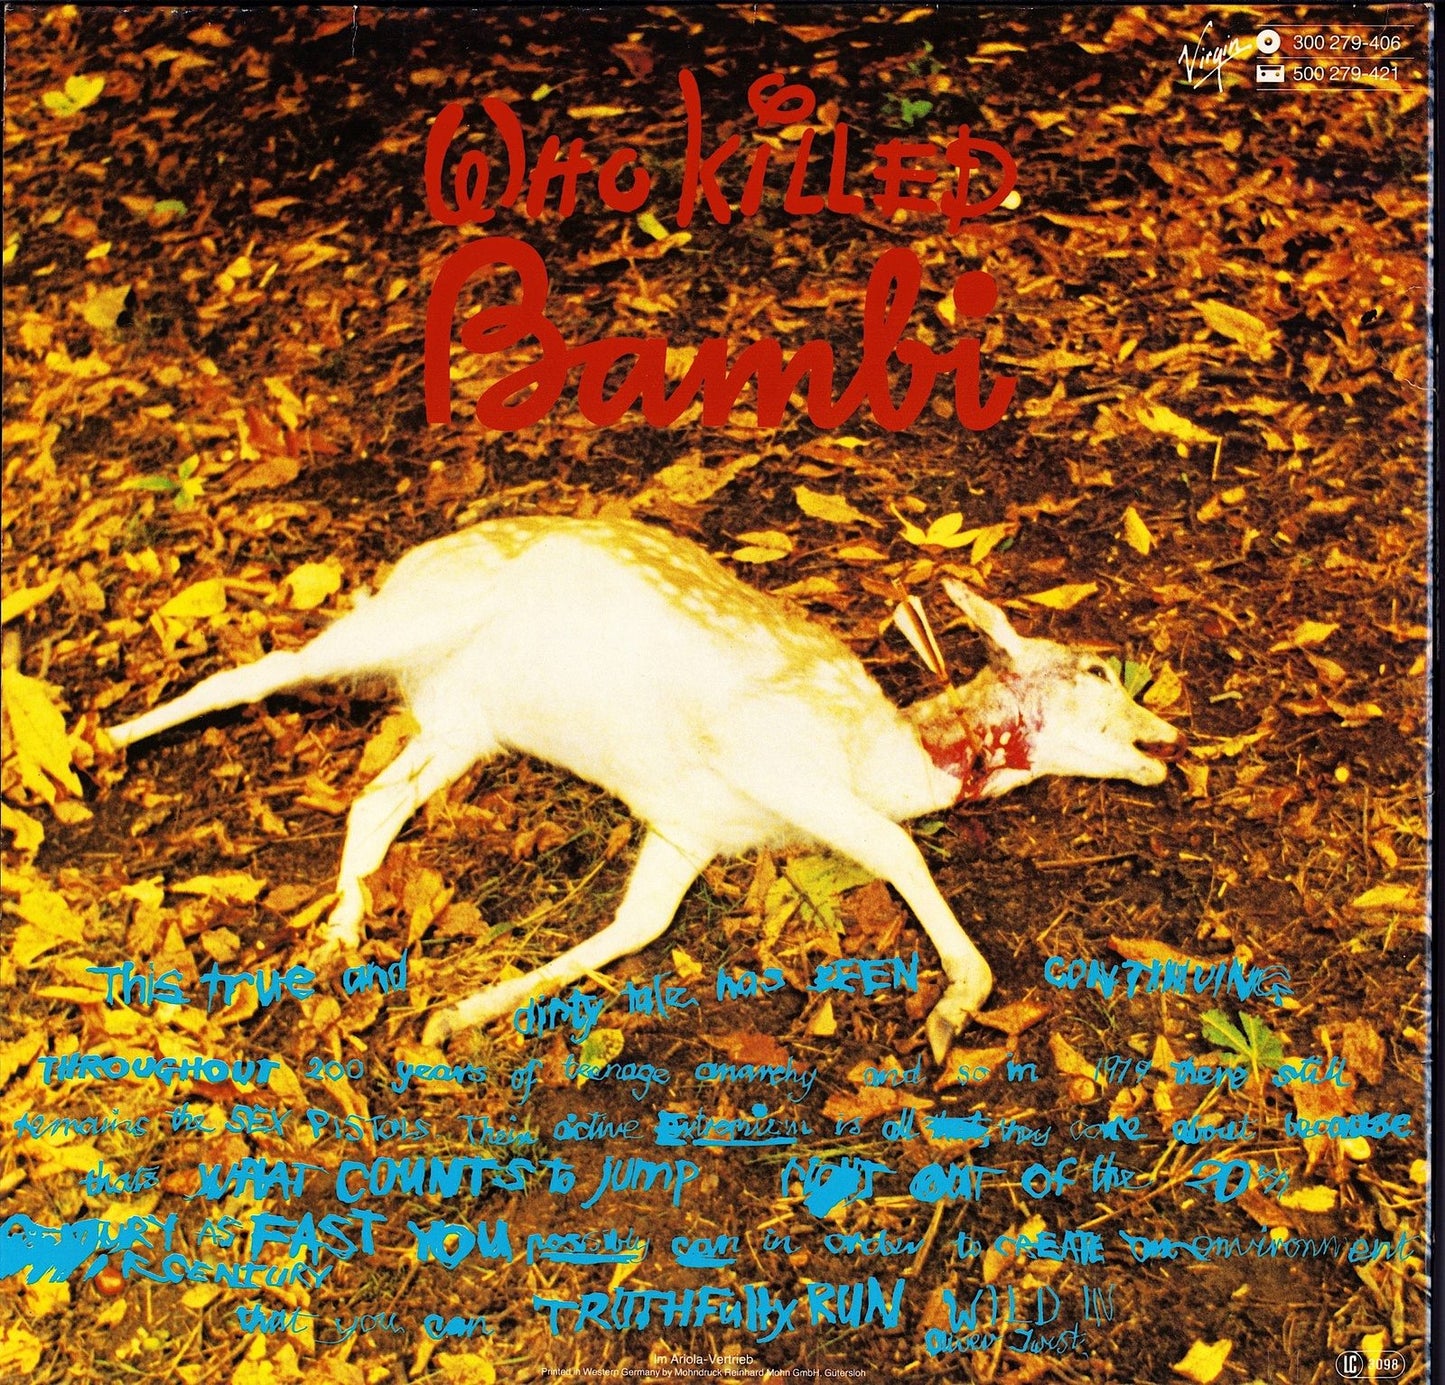 Sex Pistols - The Great Rock 'N' Roll Swindle Vinyl 2LP